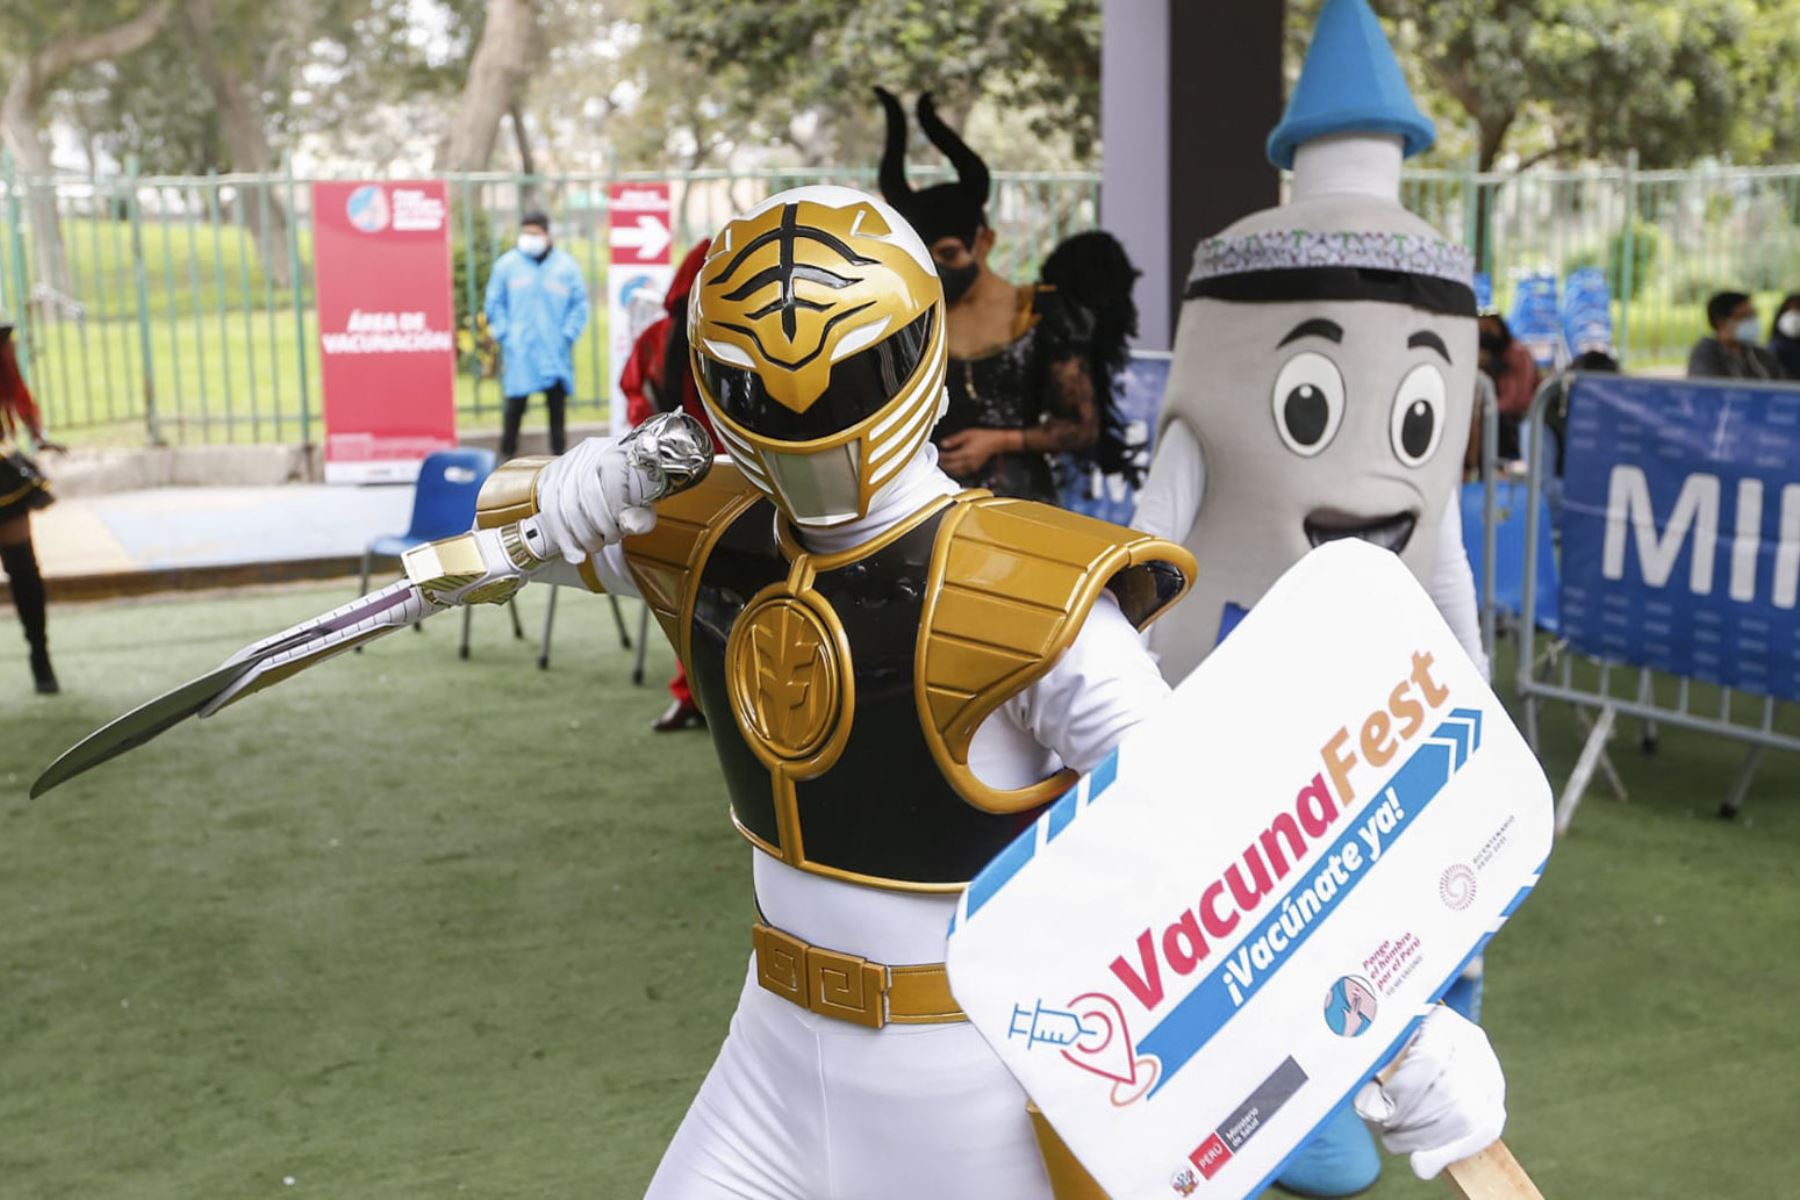 Ganadores del concursos de disfraces y pijamas recibieron varios premios y el reconocimiento por motivar a muchos jóvenes a vacunarse en los VacunaFest. Foto: ANDINA/Minsa